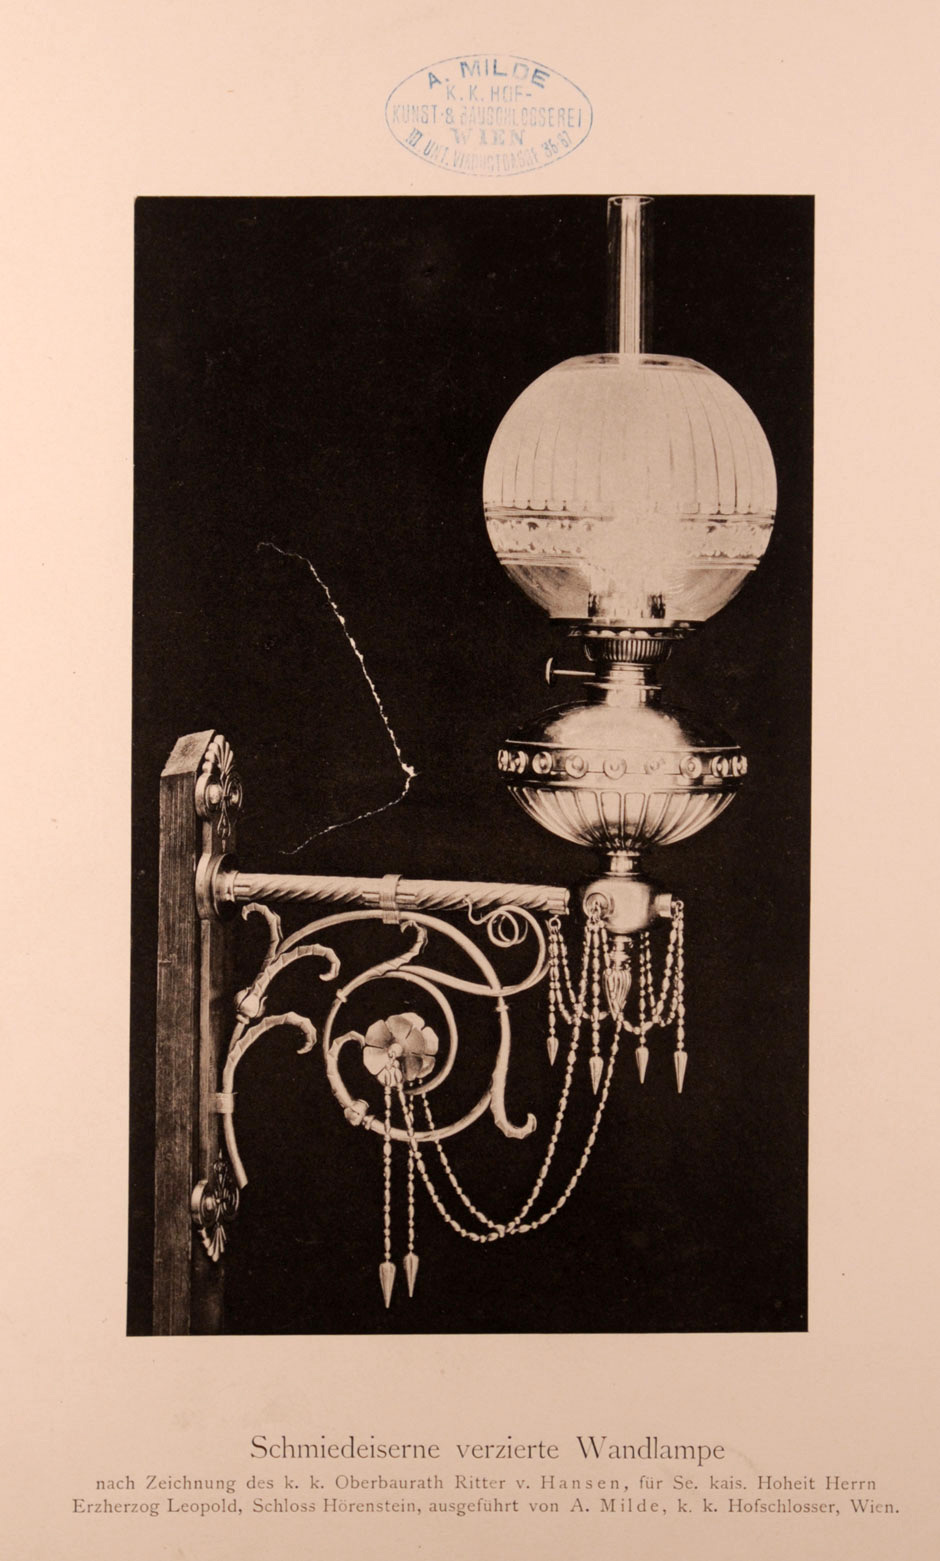 Archivbild 12: Schloß Hernstein, Schmiedeeiserne verzierte Wandlampe